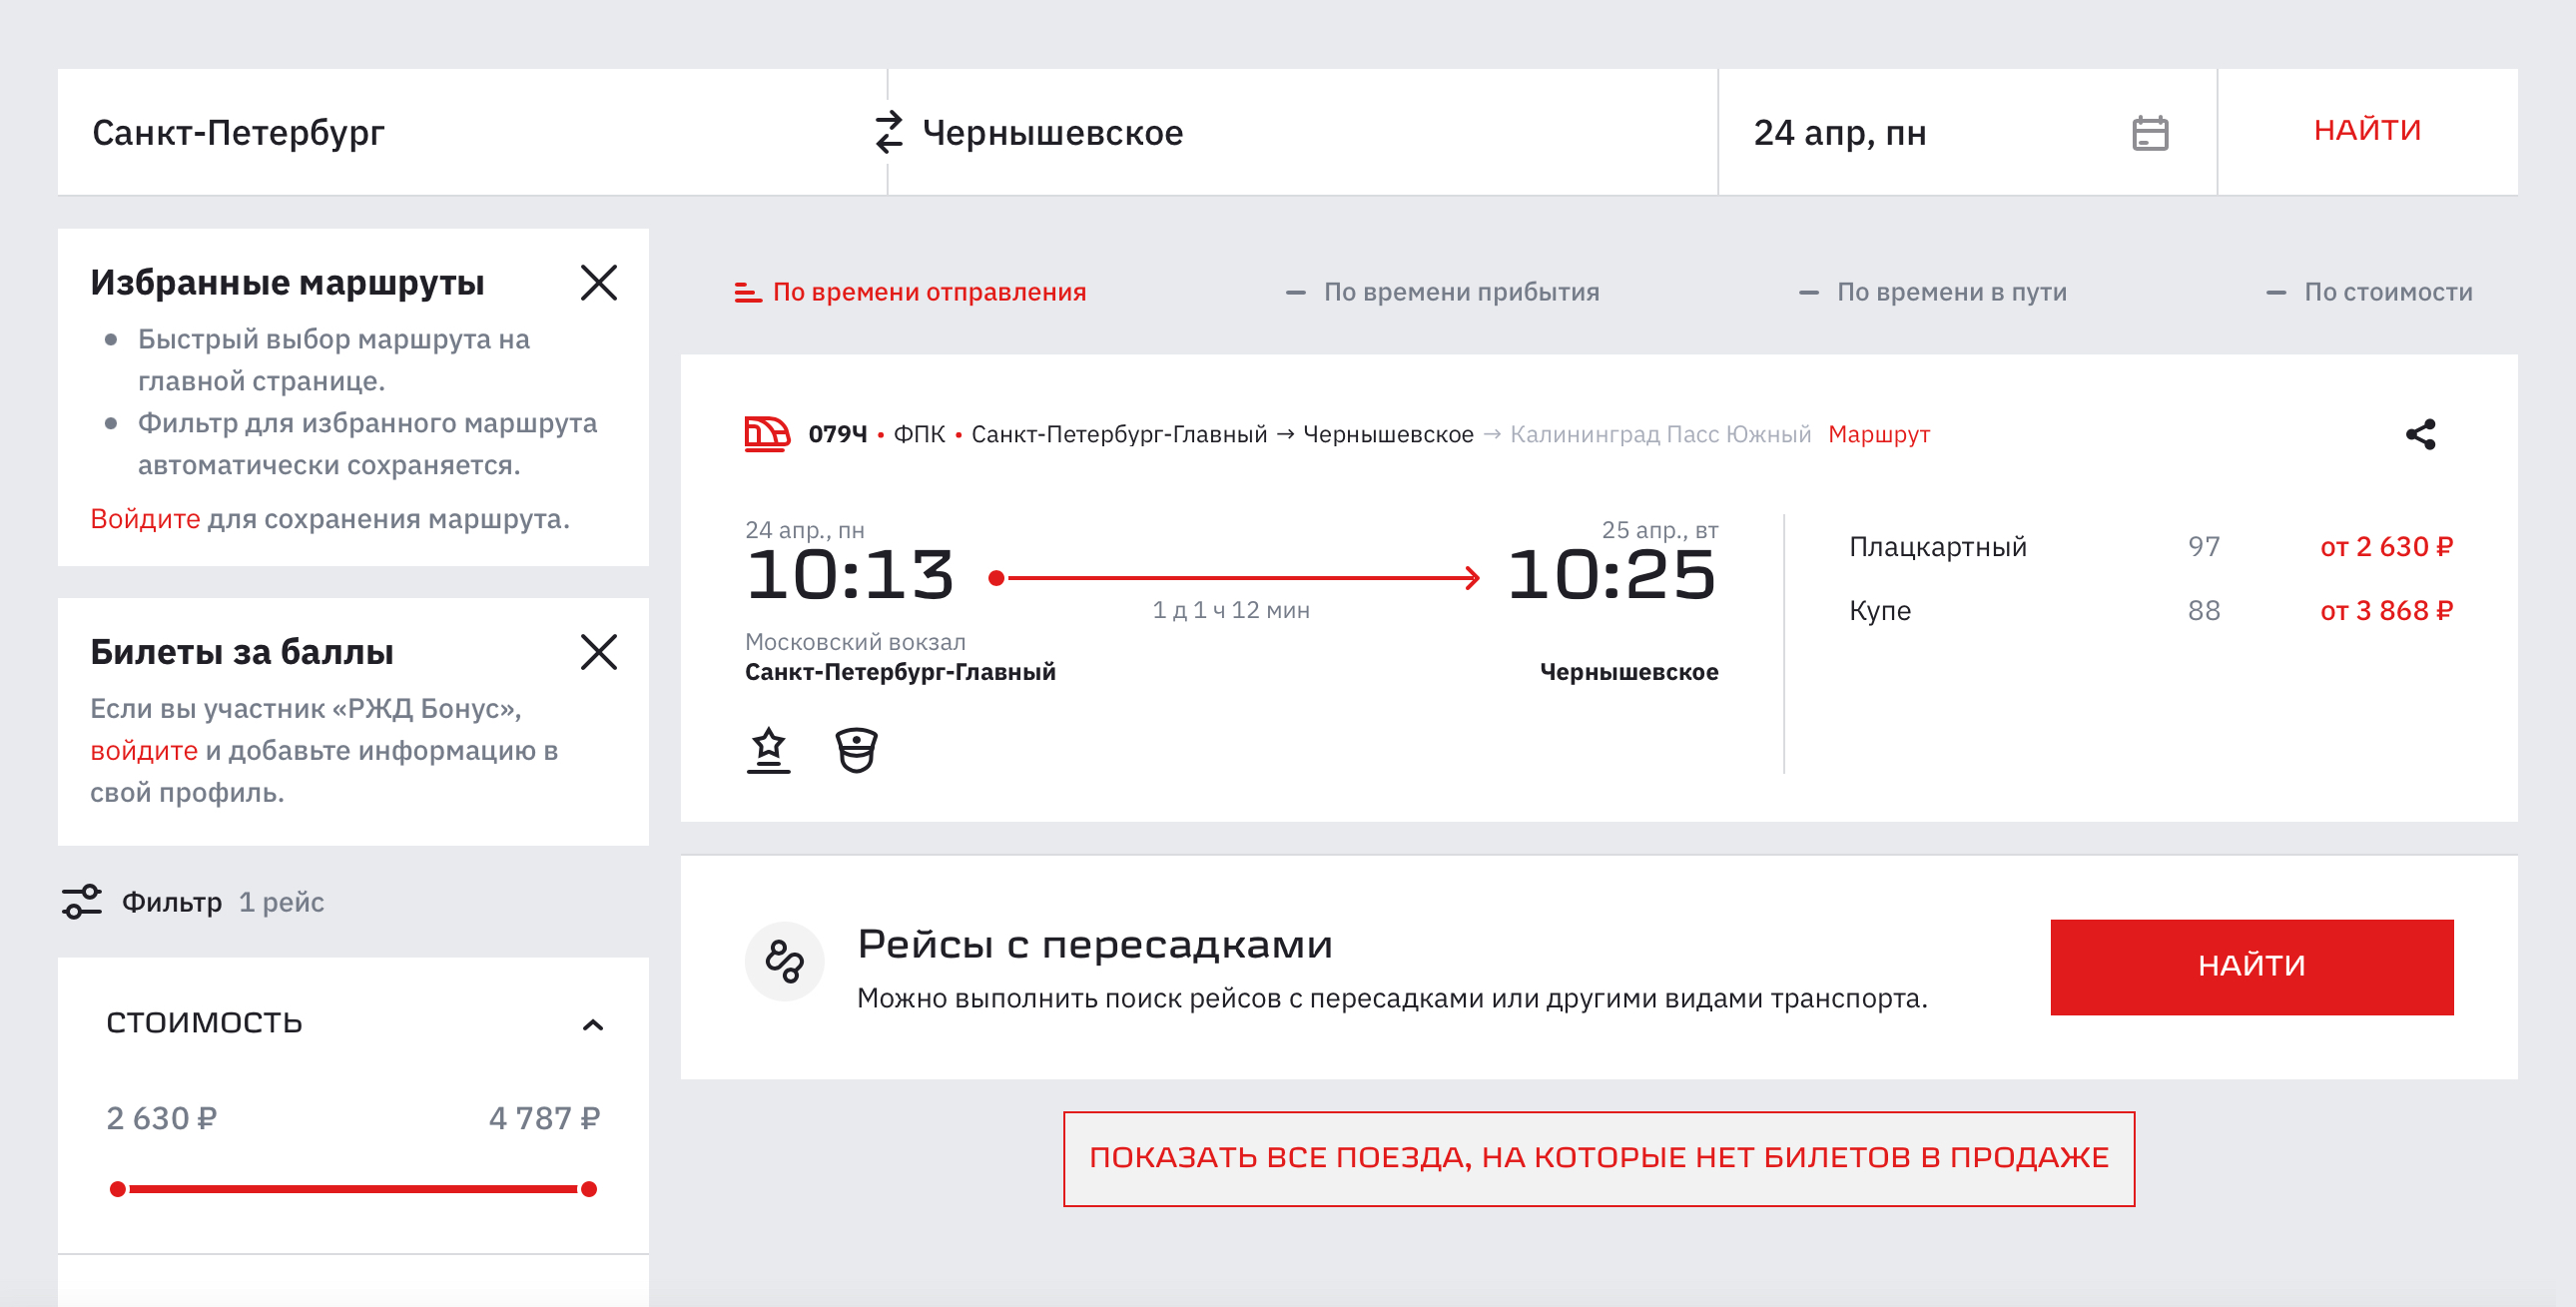 Если ехать из Петербурга, в Кяну вы прибудете в 05:58. Источник: rzd.ru